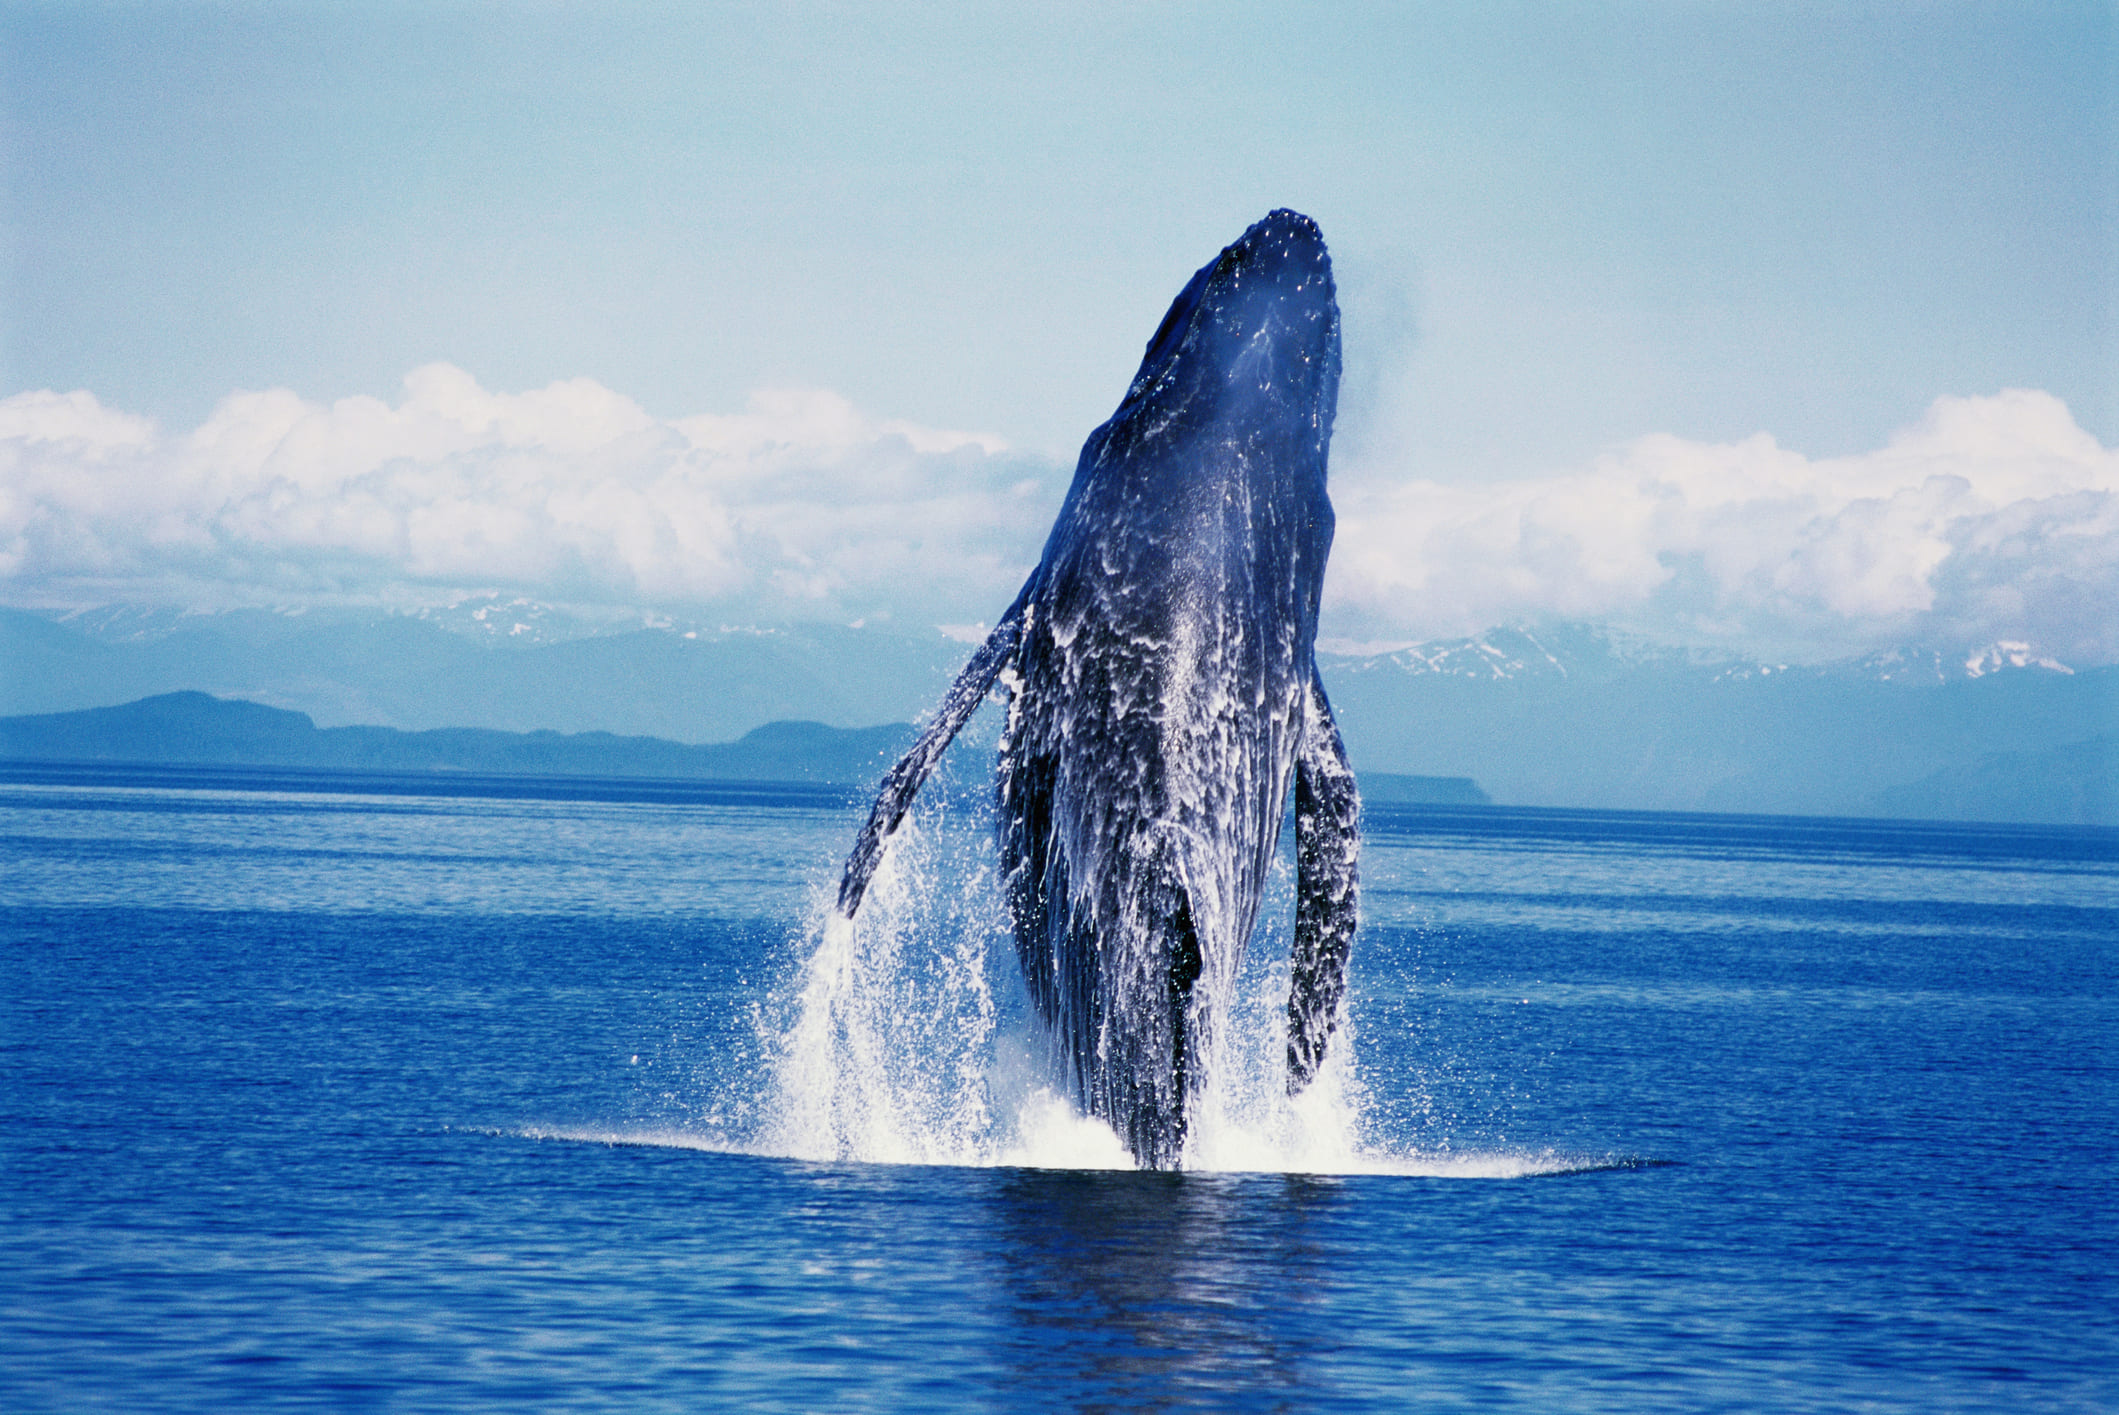 Océano Pacífico el lugar más idóneo para avistar ballenas jorobadas en Colombia. 